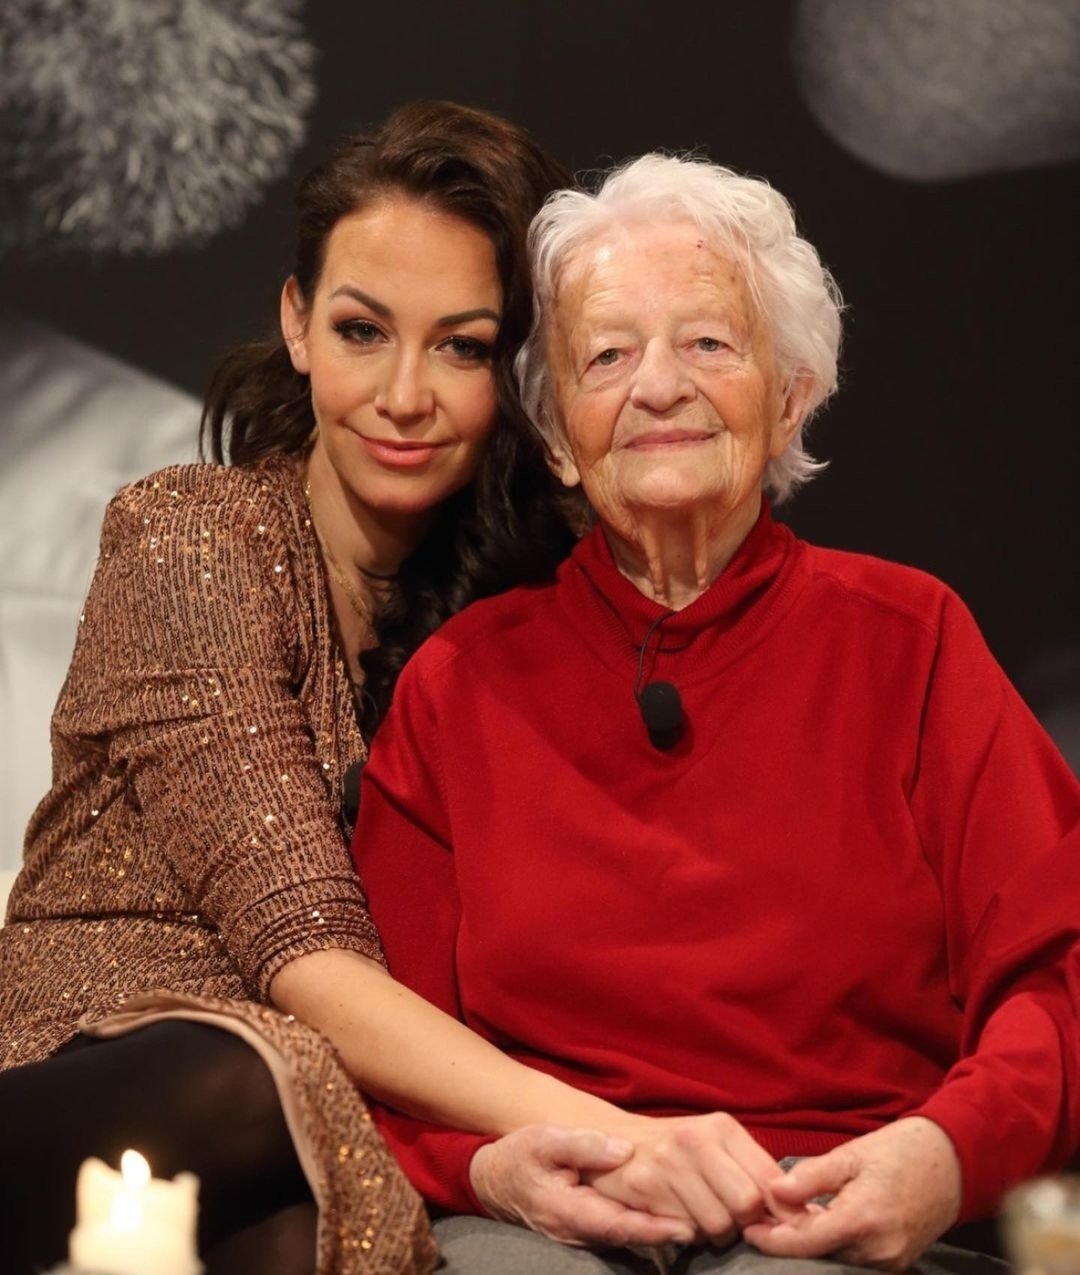 Agáta Hanychová s milovanou babičkou na začátku prosince.